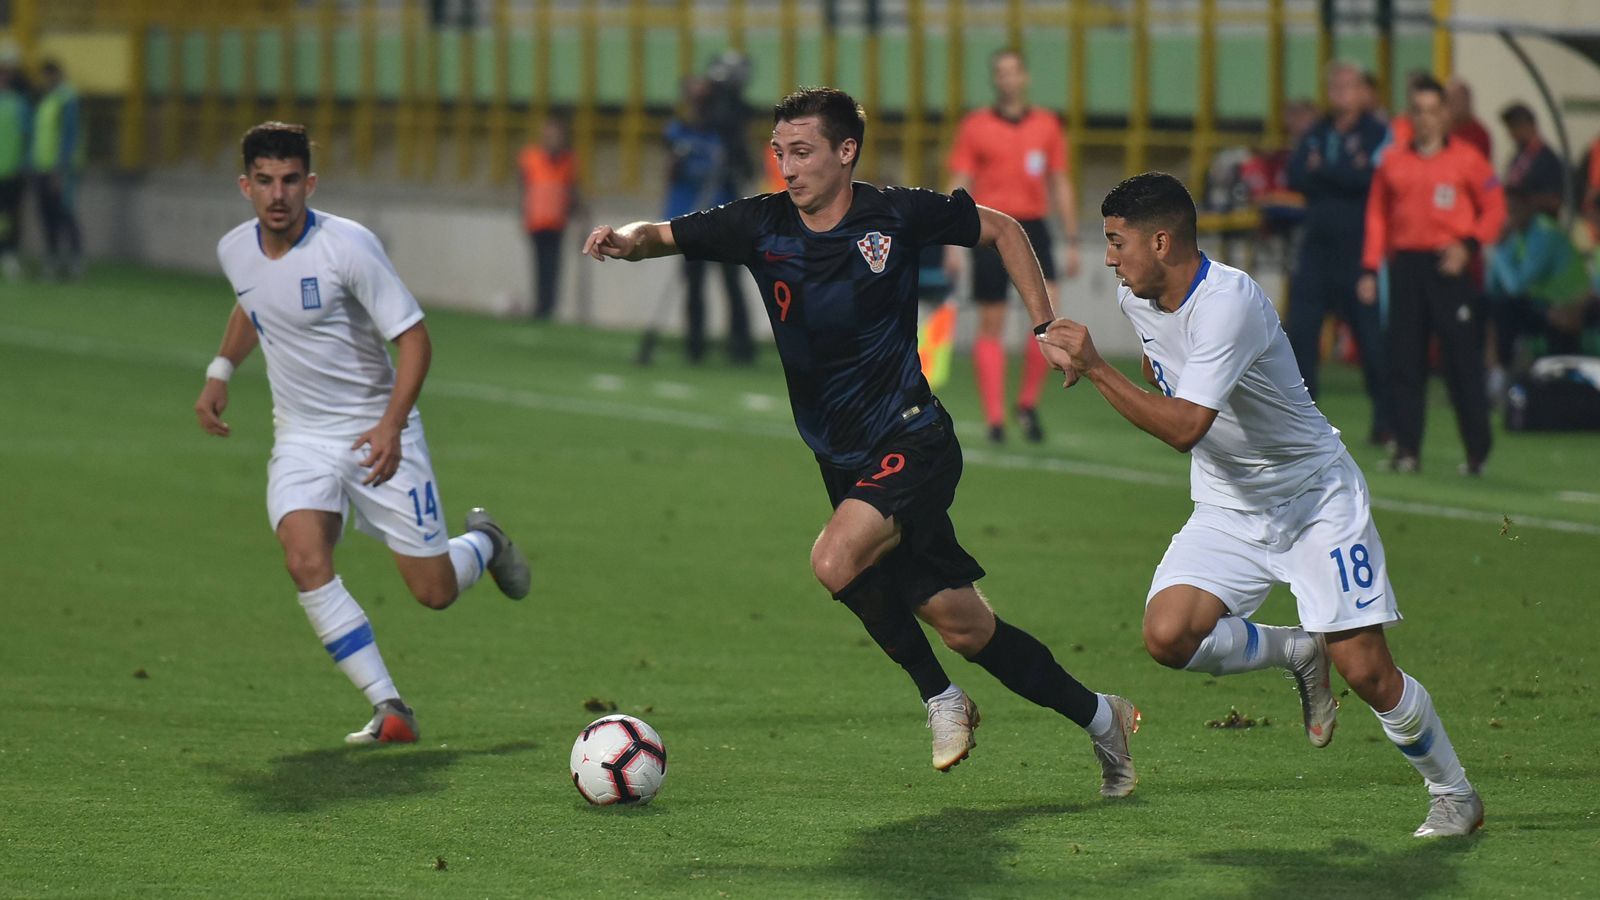 
                <strong>Griechische U21 mit zwei deutlichen Siegen in letzten Länderspielen</strong><br>
                In den letzten beiden Spielen im Juni 2019 - dem EM-Qualifikationsspiel gegen San Marino (5-0) und dem Testspiel gegen Georgien (3-0) - erzielte Griechenland insgesamt acht Tore. Beim Aus in den Playoff-Spielen zur EM 2019 gegen Österreich (0-1 H, 0-1 A) blieb Griechenlands U21 torlos - ebenso wie zuvor beim vorentscheidenden Gruppenspiel in Kroatien im Oktober 2018.
              